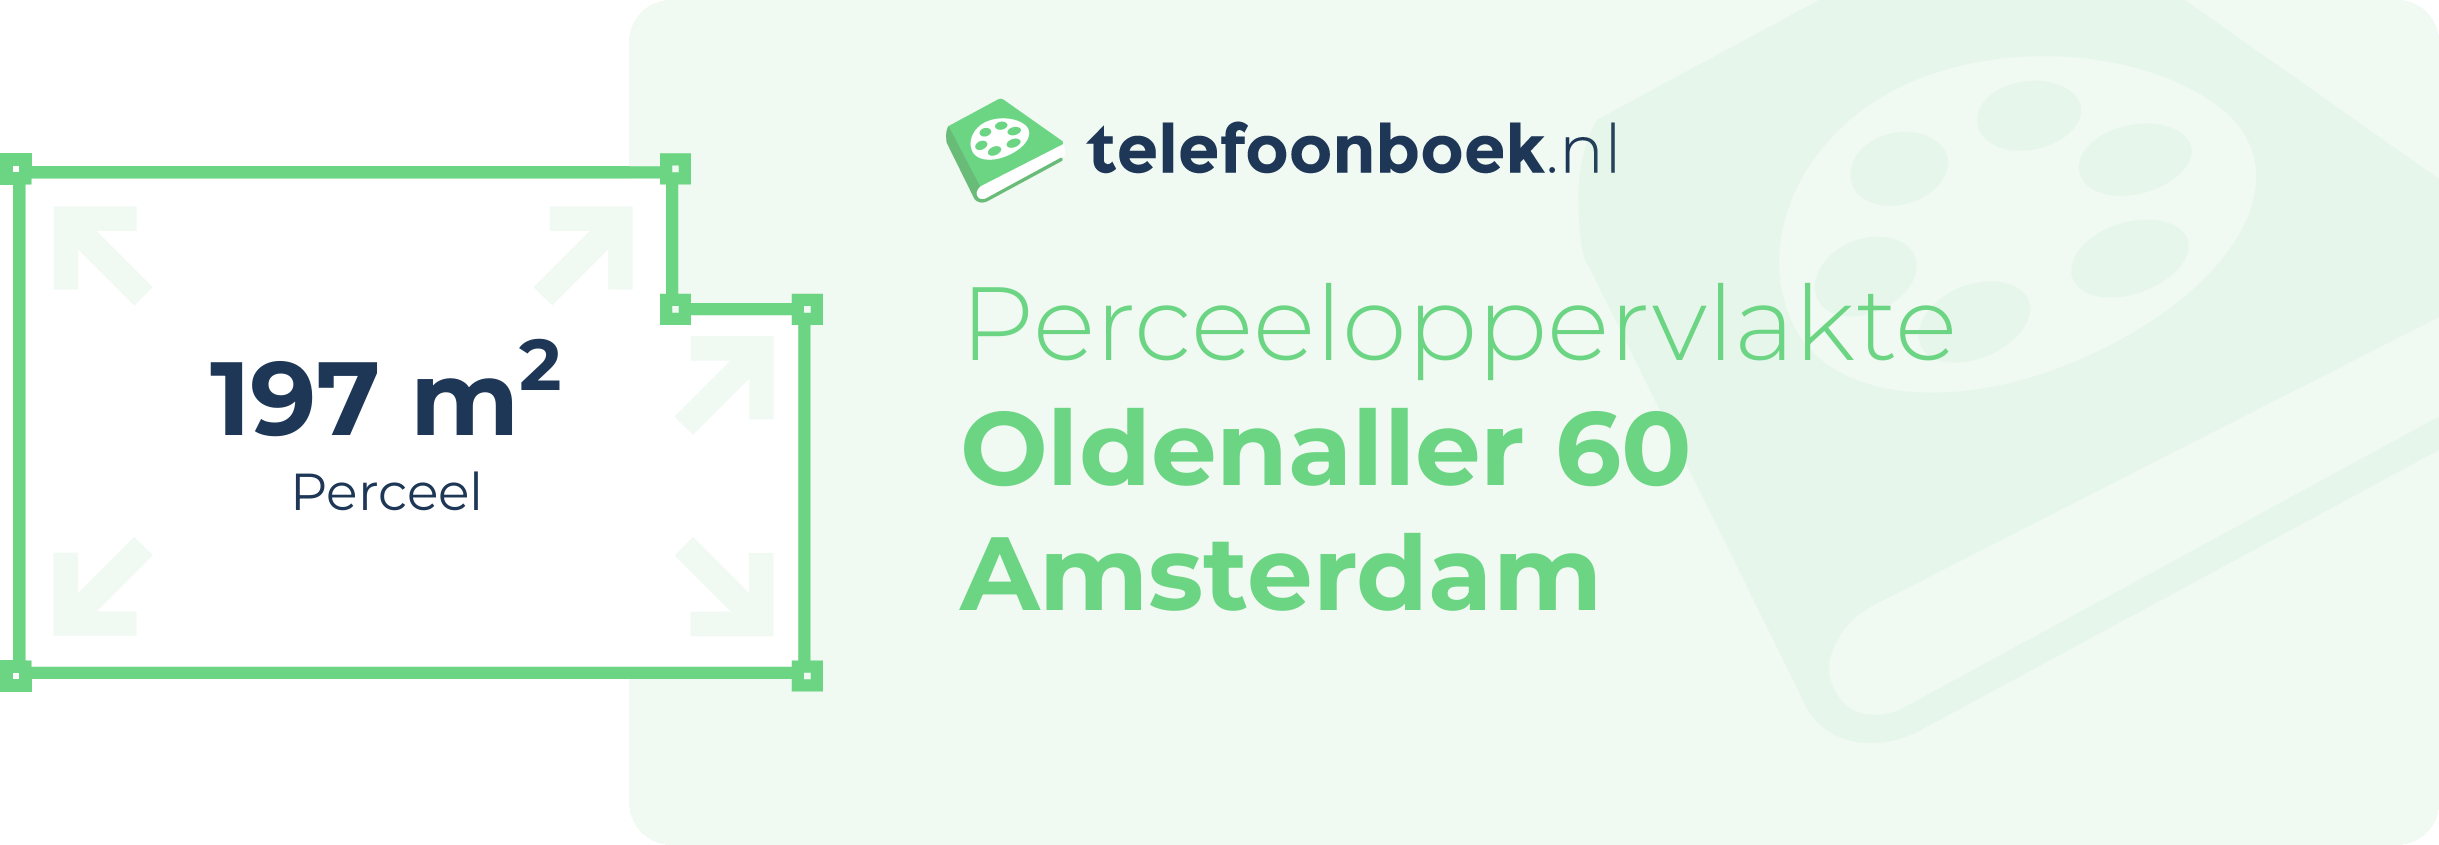 Perceeloppervlakte Oldenaller 60 Amsterdam